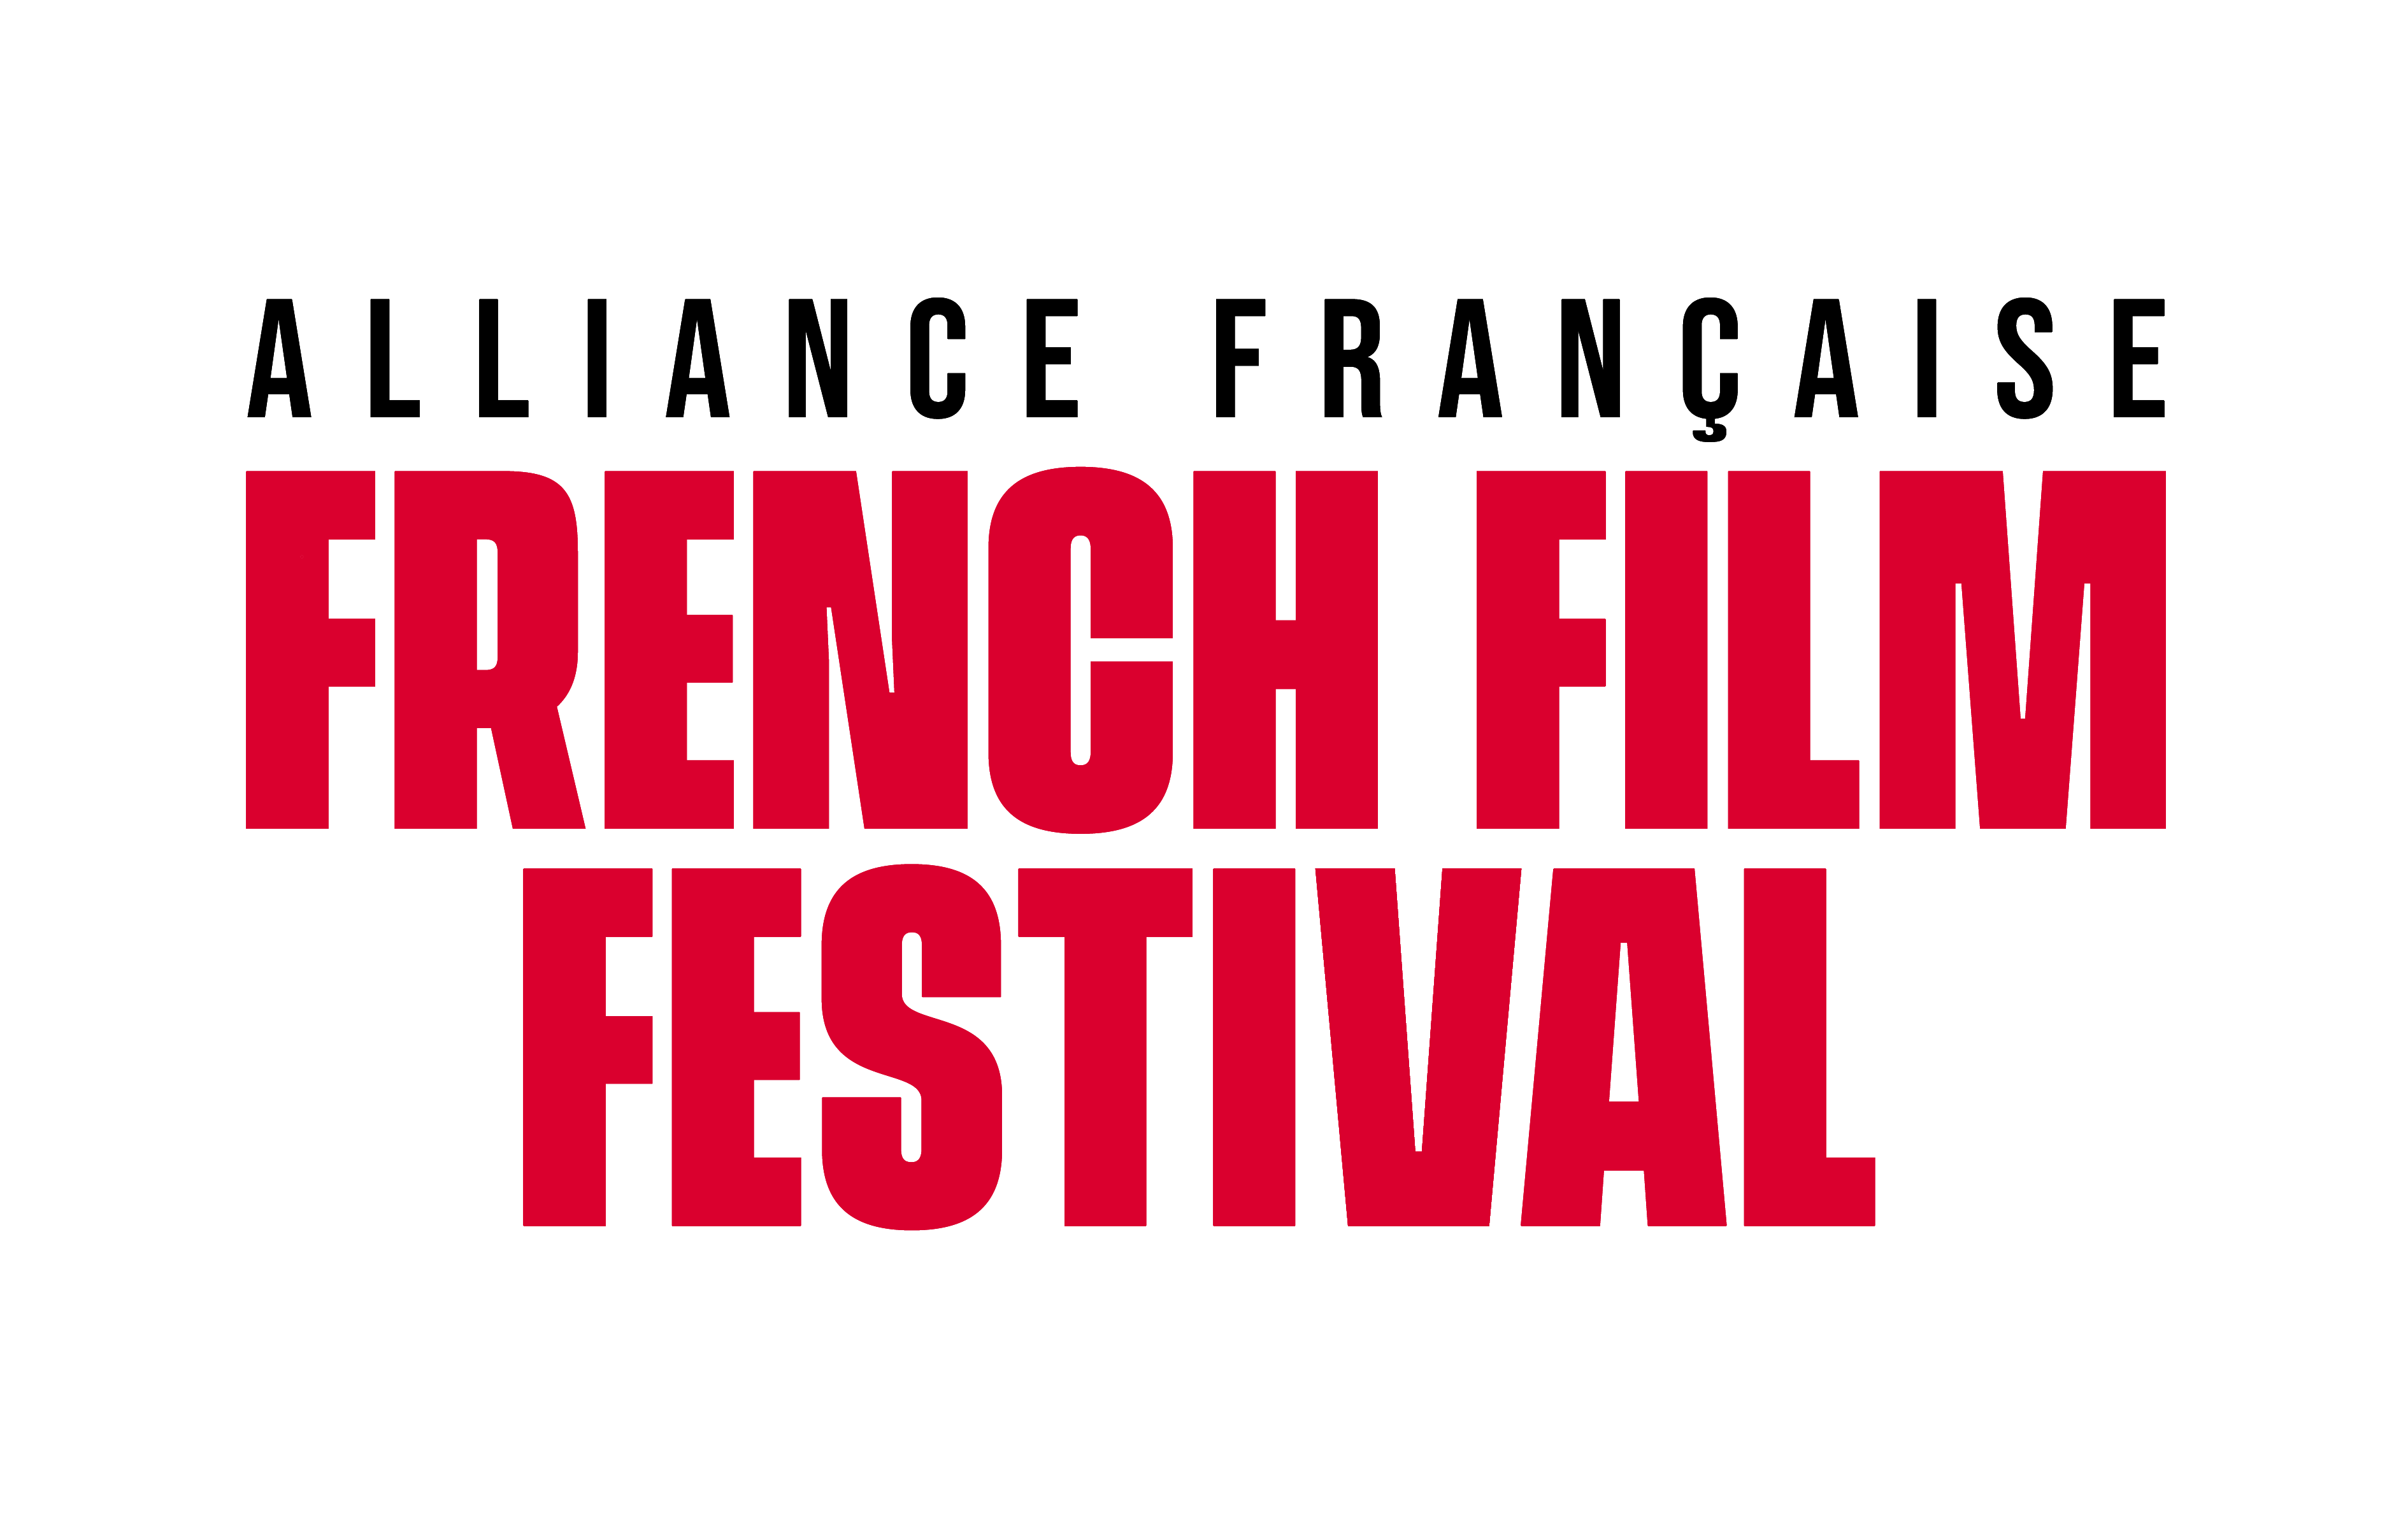 Alliance Française de Melbourne Choose the cinematic masterpiece that